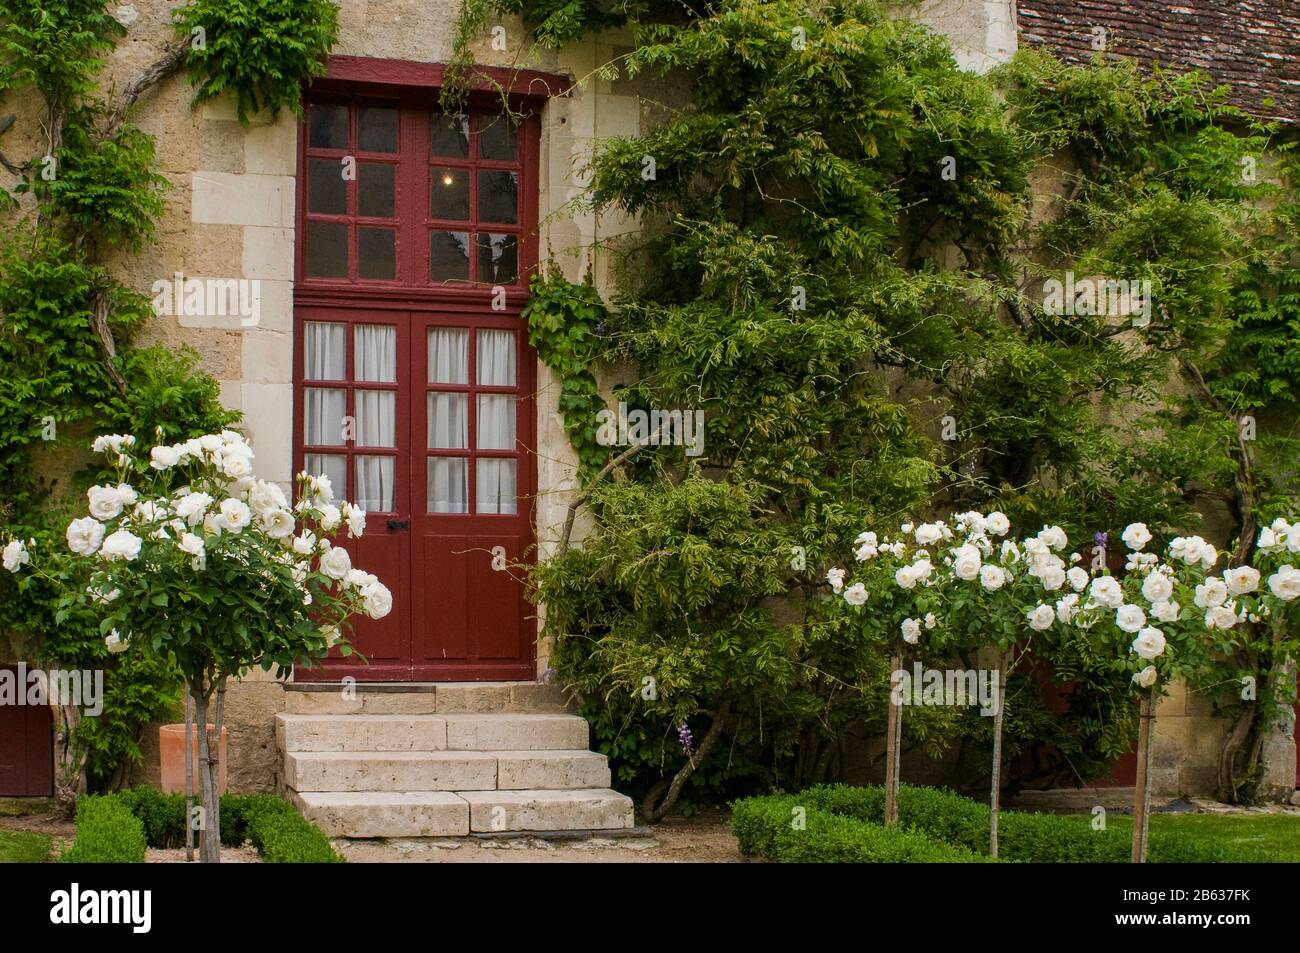 Chateau de Chenonceau è uno dei castelli più fotografati e visitati in Francia per la sua architettura, gli interni, le opere d'arte e il giardino. Foto Stock